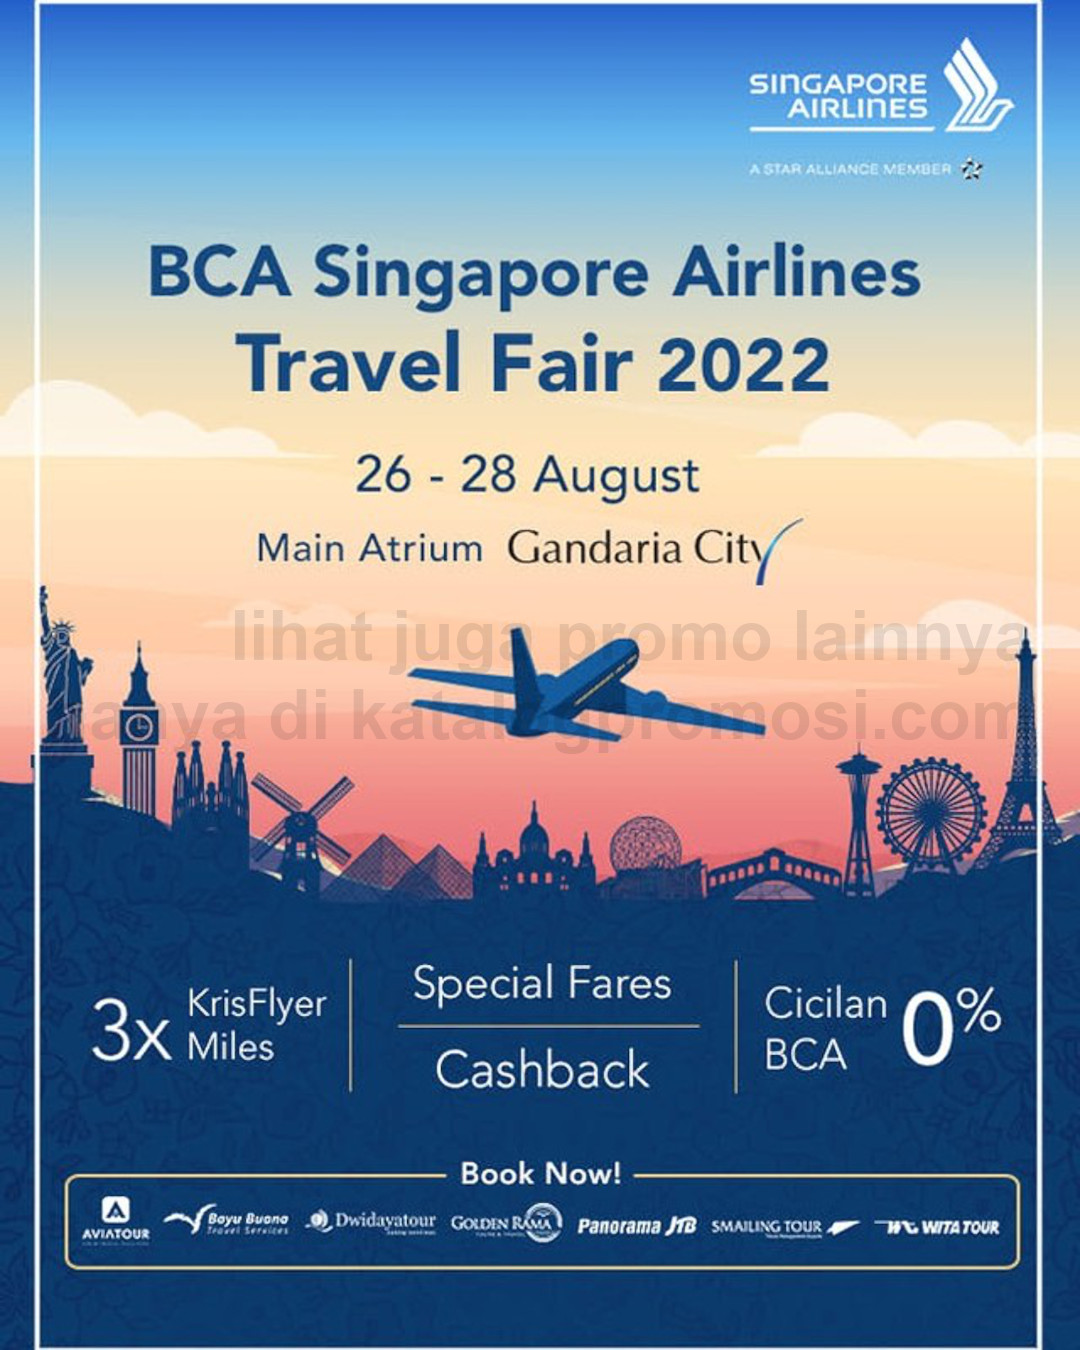 sq bca travel fair 2022